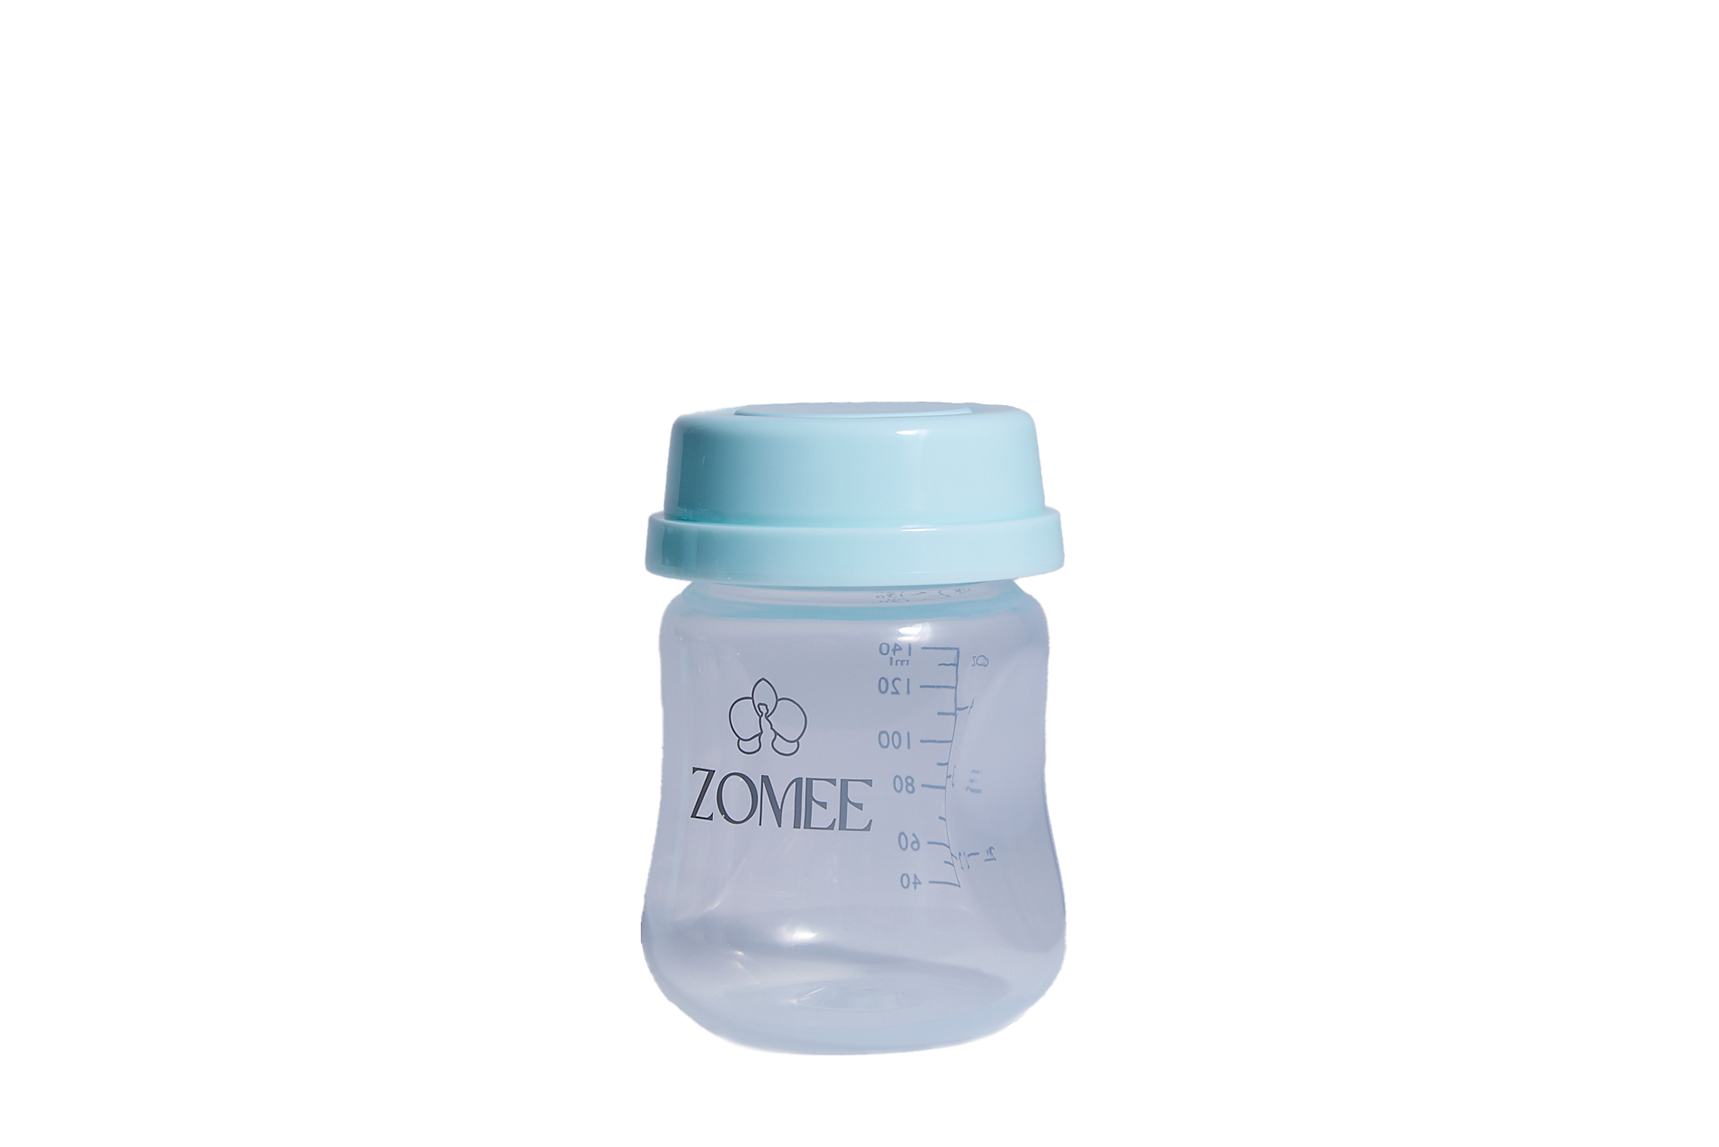 Storage Bottle 140ml (4.75oz) - Zomee Breast Pumps